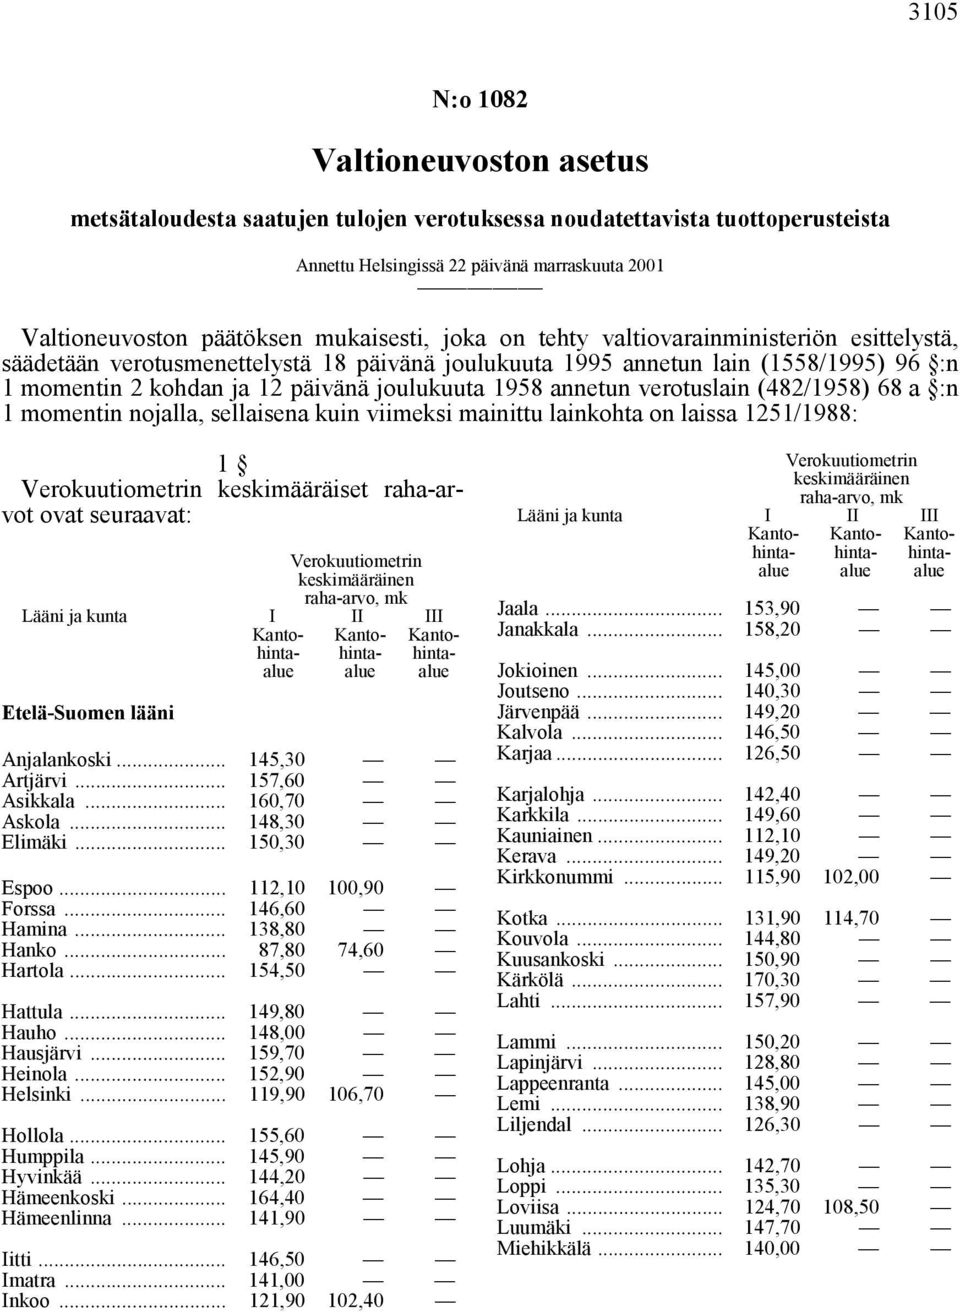 1958 annetun verotuslain (482/1958) 68 a :n 1 momentin nojalla, sellaisena kuin viimeksi mainittu lainkohta on laissa 1251/1988: 1 keskimääräiset raha-arvot ovat seuraavat: Etelä-Suomen lääni